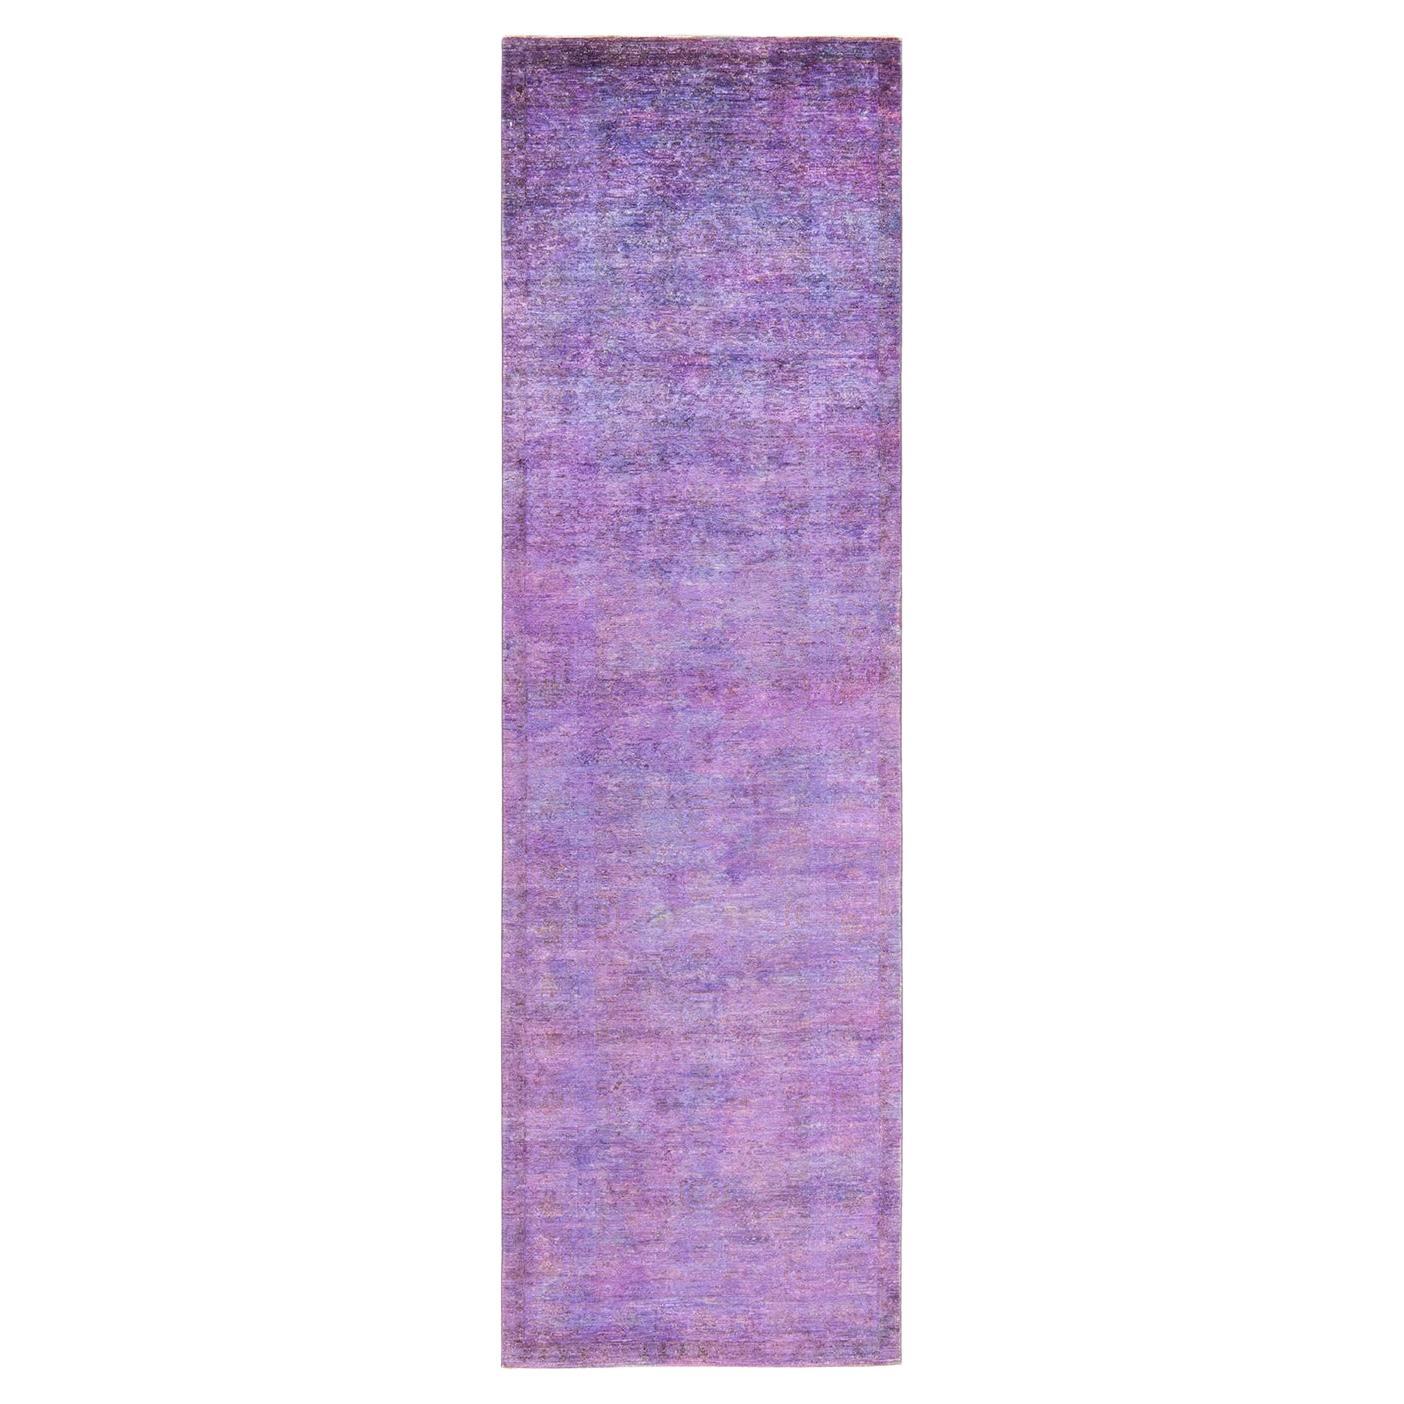 Tappeto per l'area viola Vibrance, unico nel suo genere, annodato a mano, 3' 0" x 10' 3".